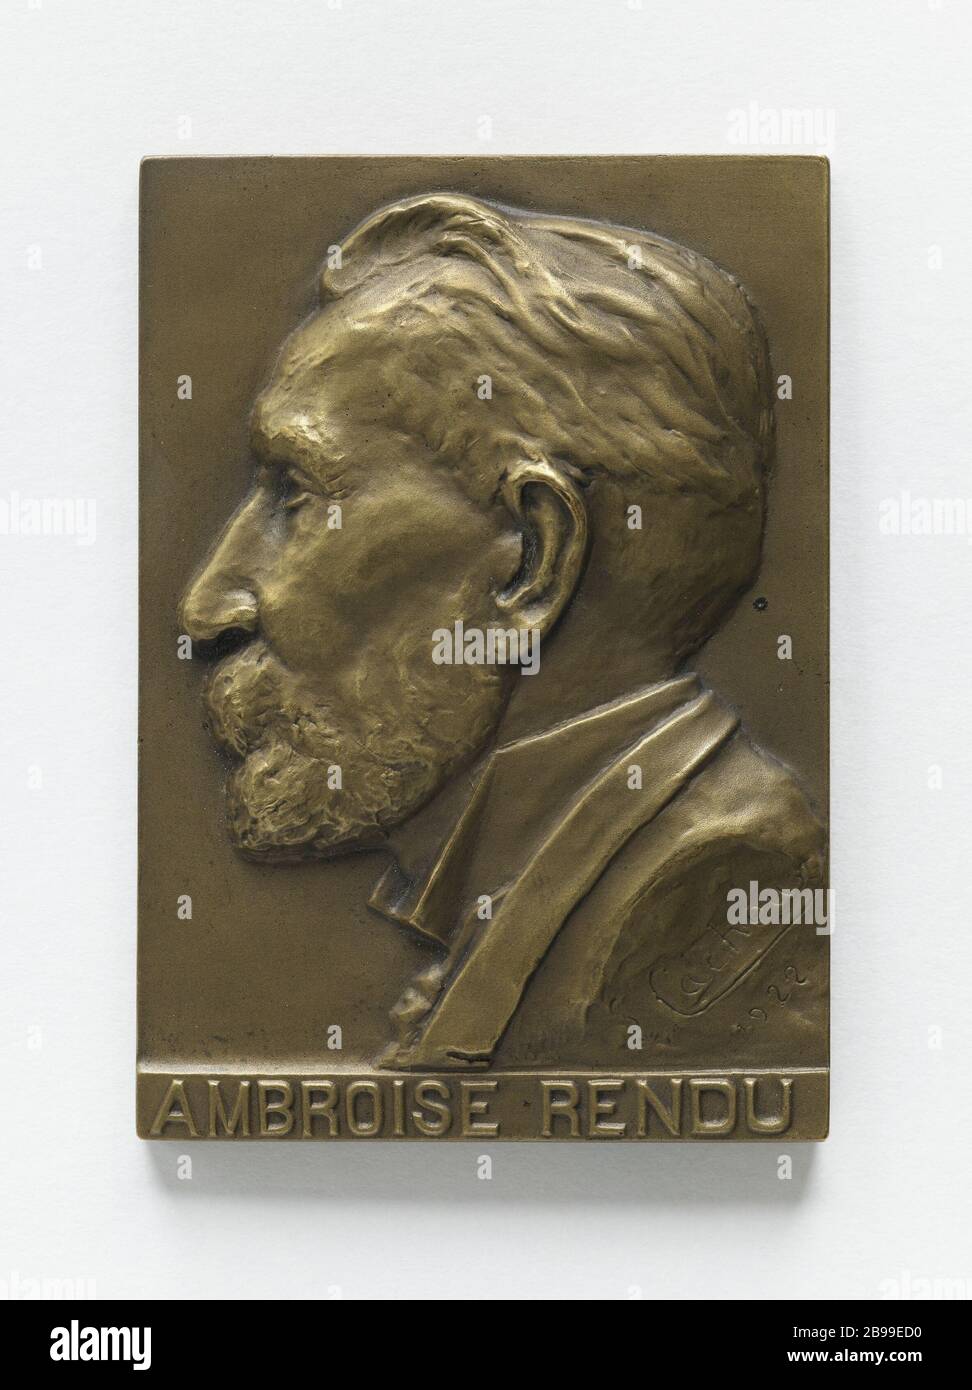 Ambrose Rendering (1847-1934), conseiller municipal Paris 1922 Cachoux. Ambroise Rendu (1847-1934), conséiller municipal de Paris, 1922. Bronze, 1922. Paris, musée Carnavalet. Banque D'Images